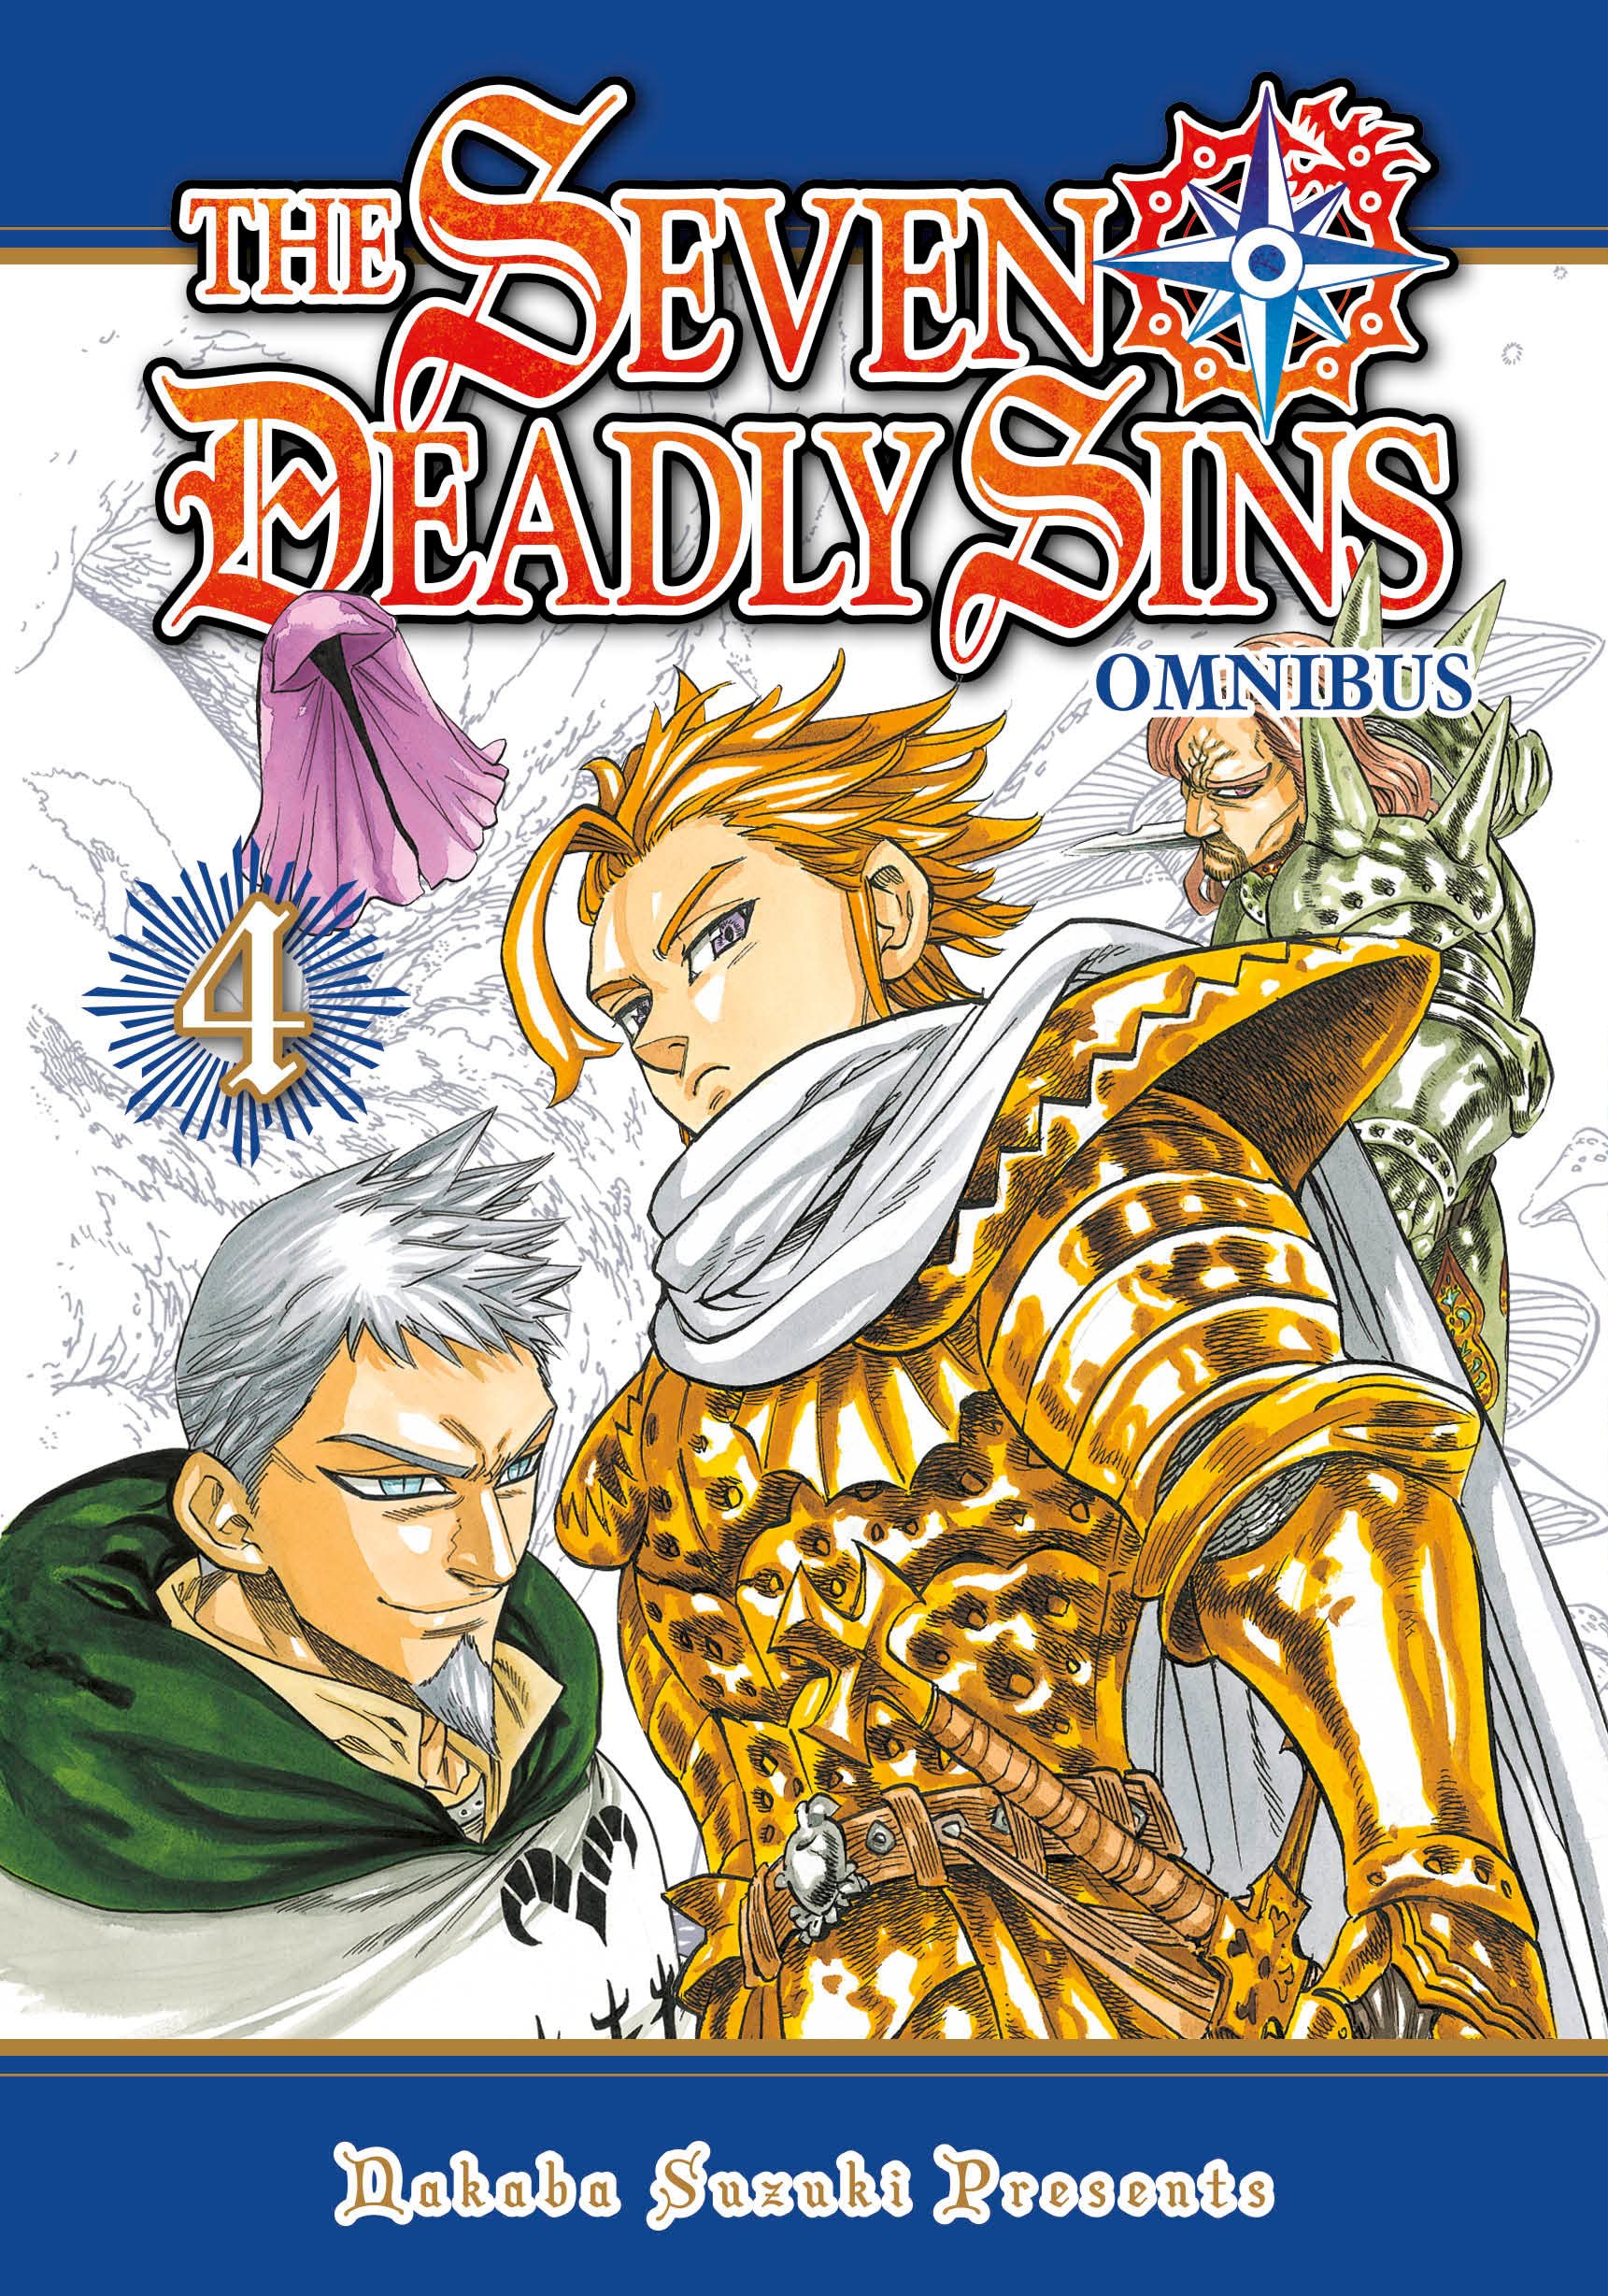 The Seven Deadly Sins 3 in 1 - Omnibus 4 - Volumes 10-12 | Nakaba Suzuki